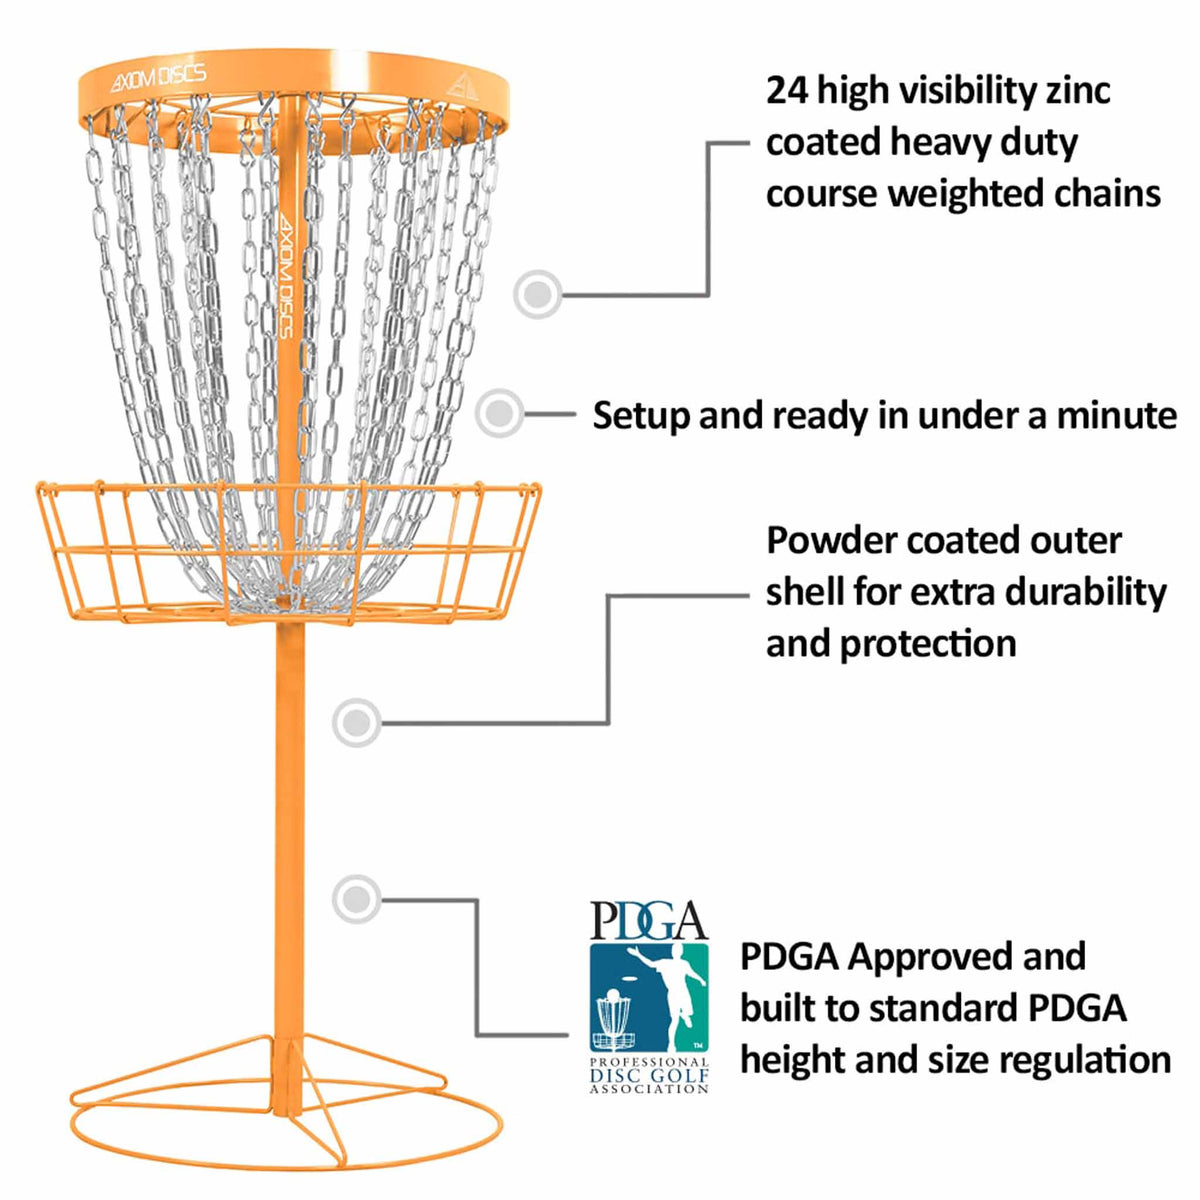 Axiom Pro disc golf basket by Axiom Discs